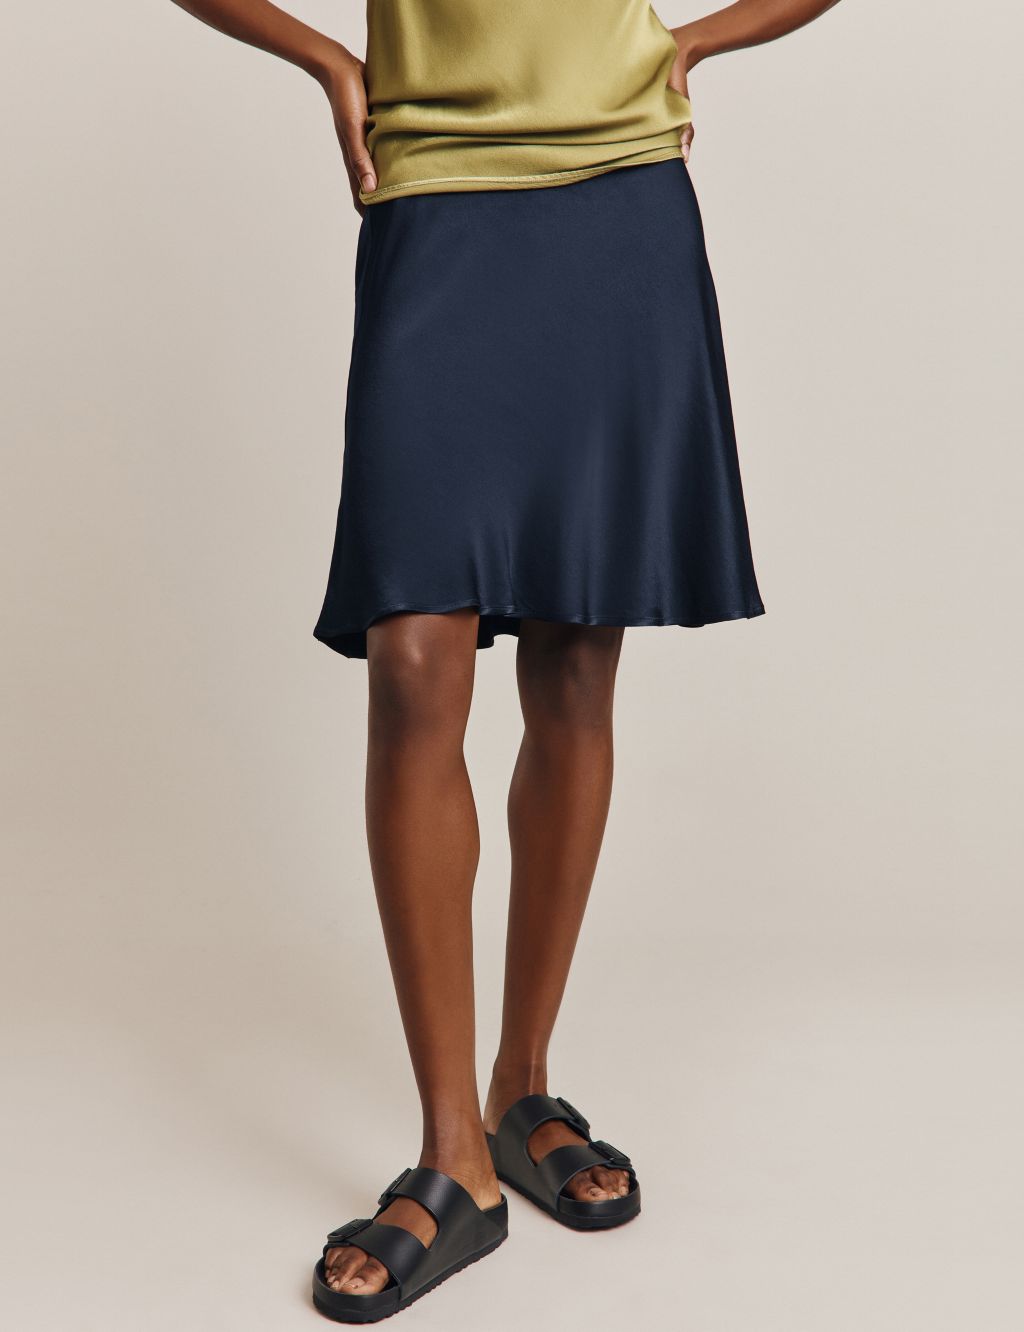 Satin Knee Length Slip Skirt image 2